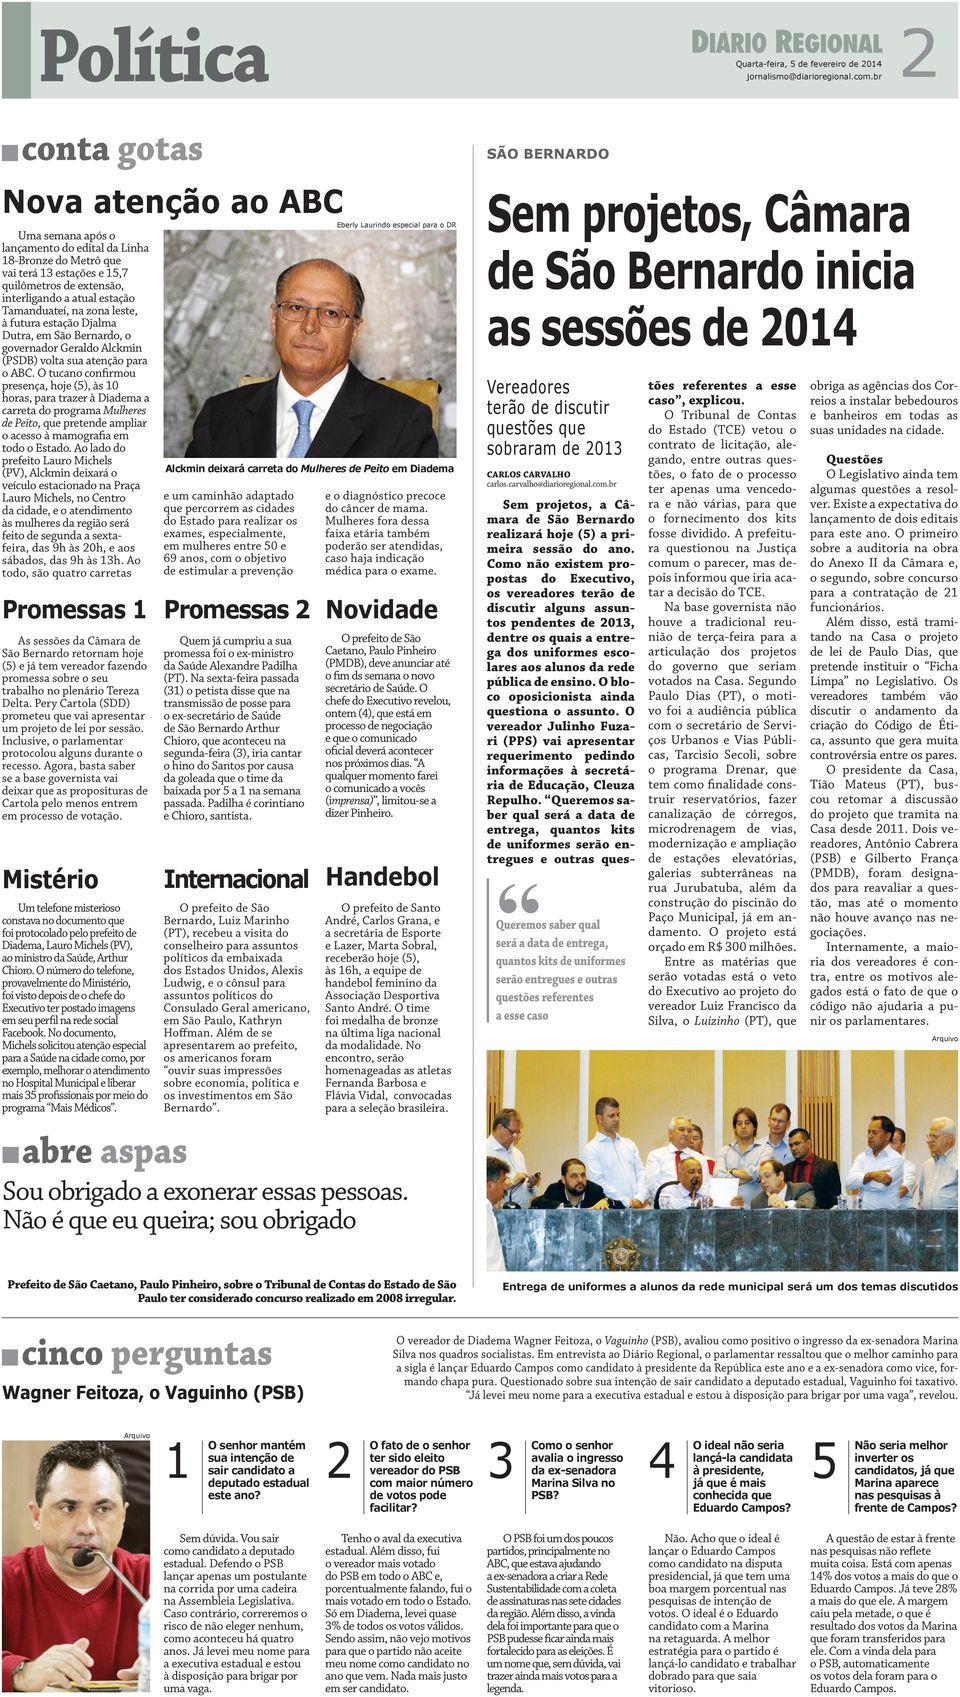 Tamanduateí, na zona leste, à futura estação Djalma Dutra, em São Bernardo, o governador Geraldo Alckmin (PSDB) volta sua atenção para o ABC.